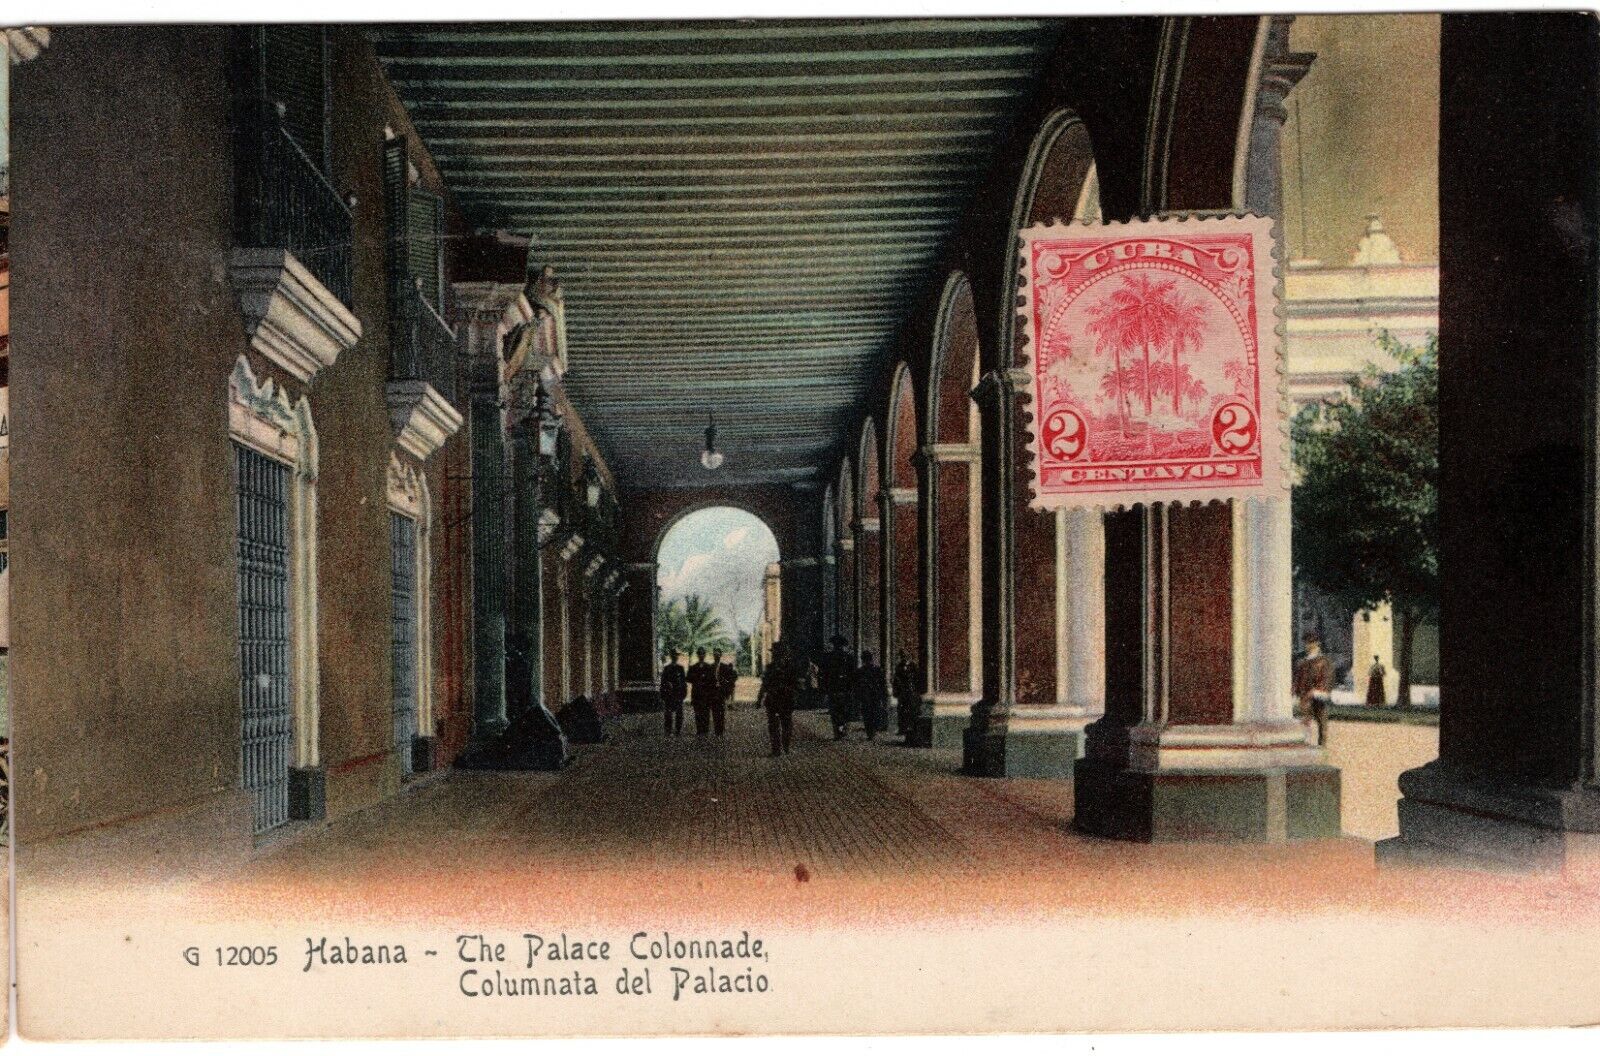 G12005 Habana – The Palace Colonnade, Columnala del Palacia, 2 c Royal Palms 